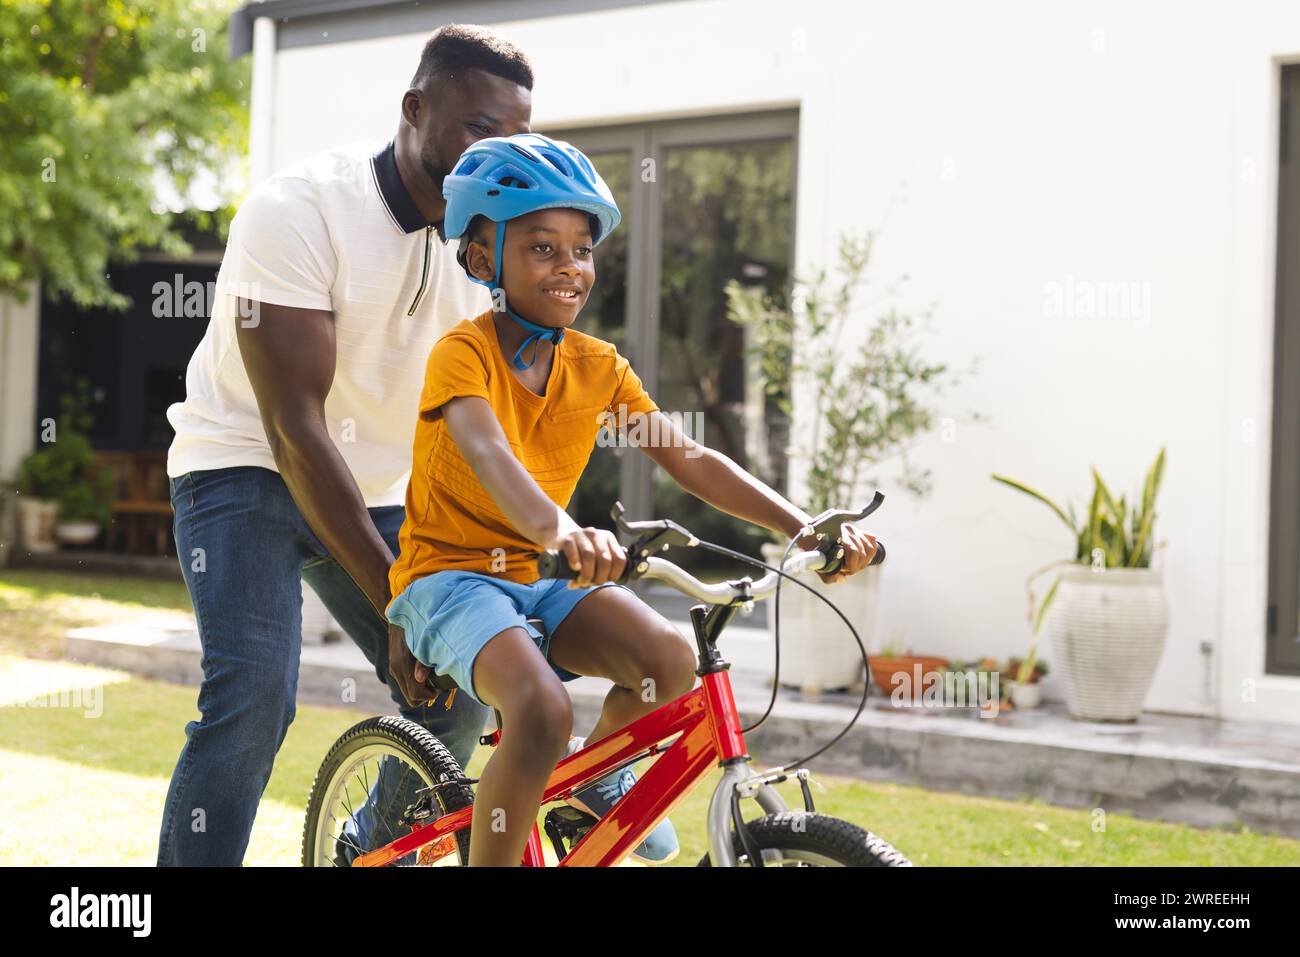 Der afroamerikanische Vater bringt seinem Sohn bei, in einem sonnigen Hinterhof Fahrrad zu fahren Stockfoto